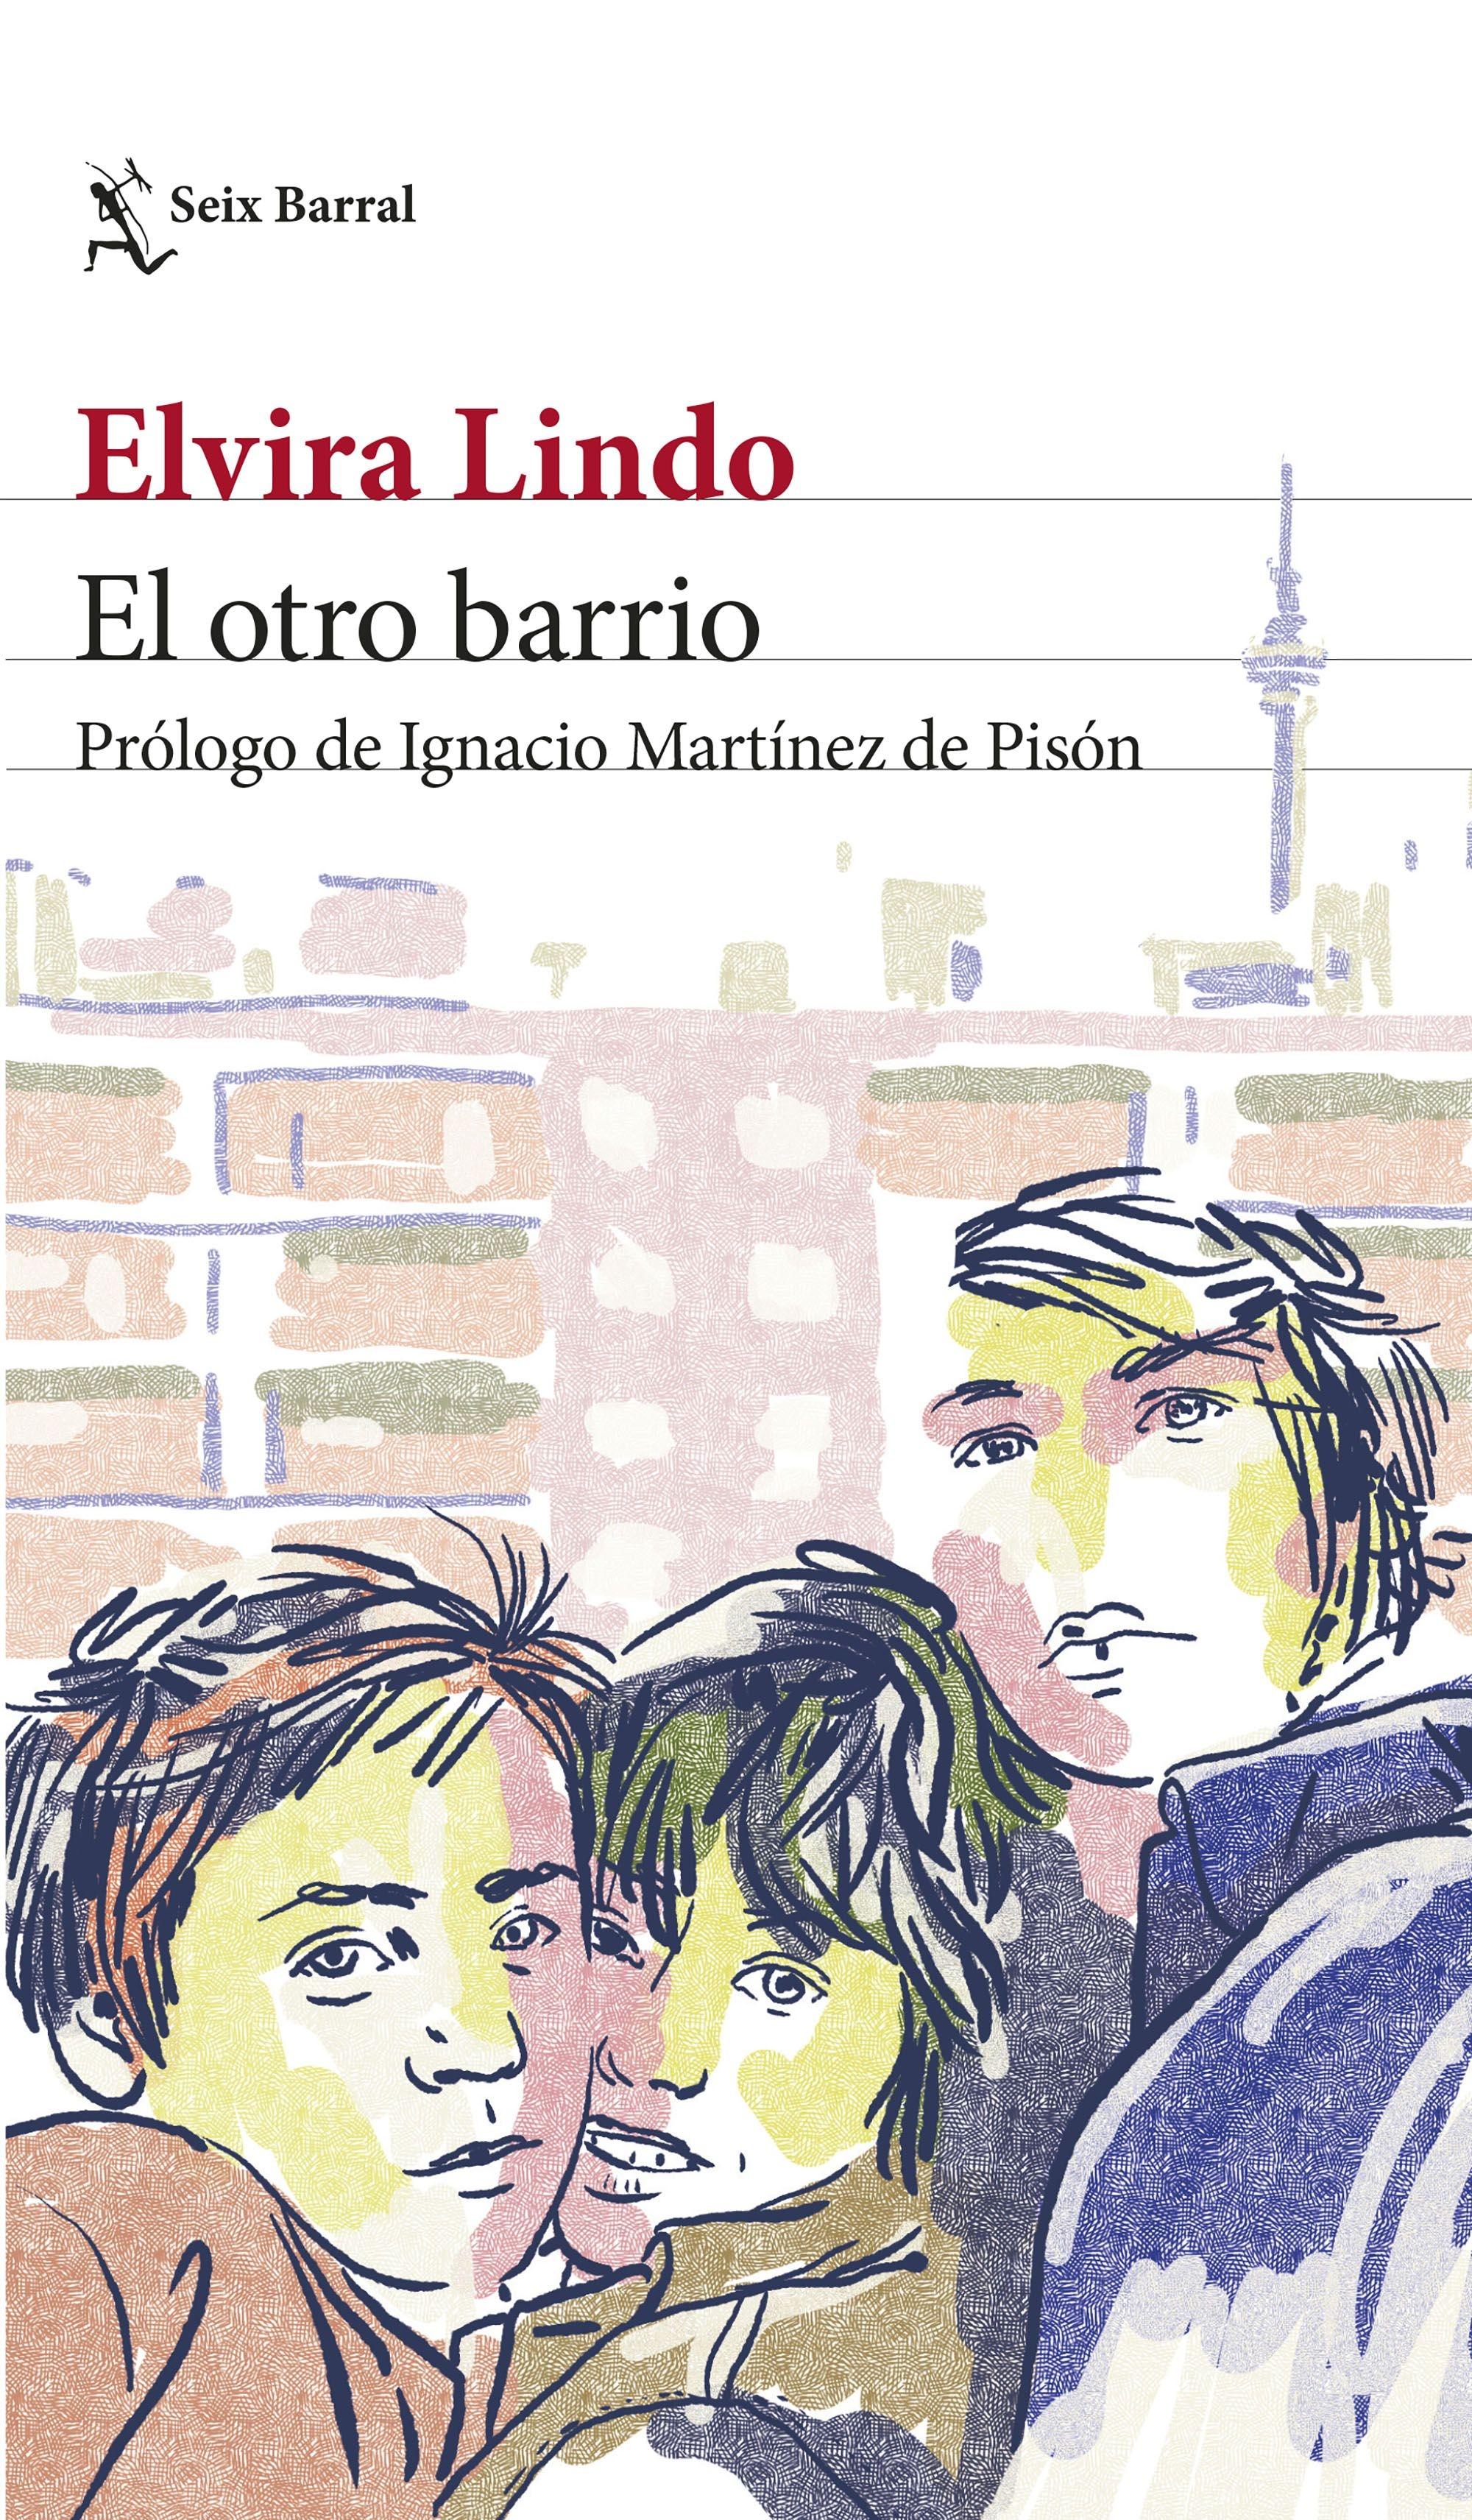 El Otro Barrio "Prólogo de Ignacio Martínez de Pisón"